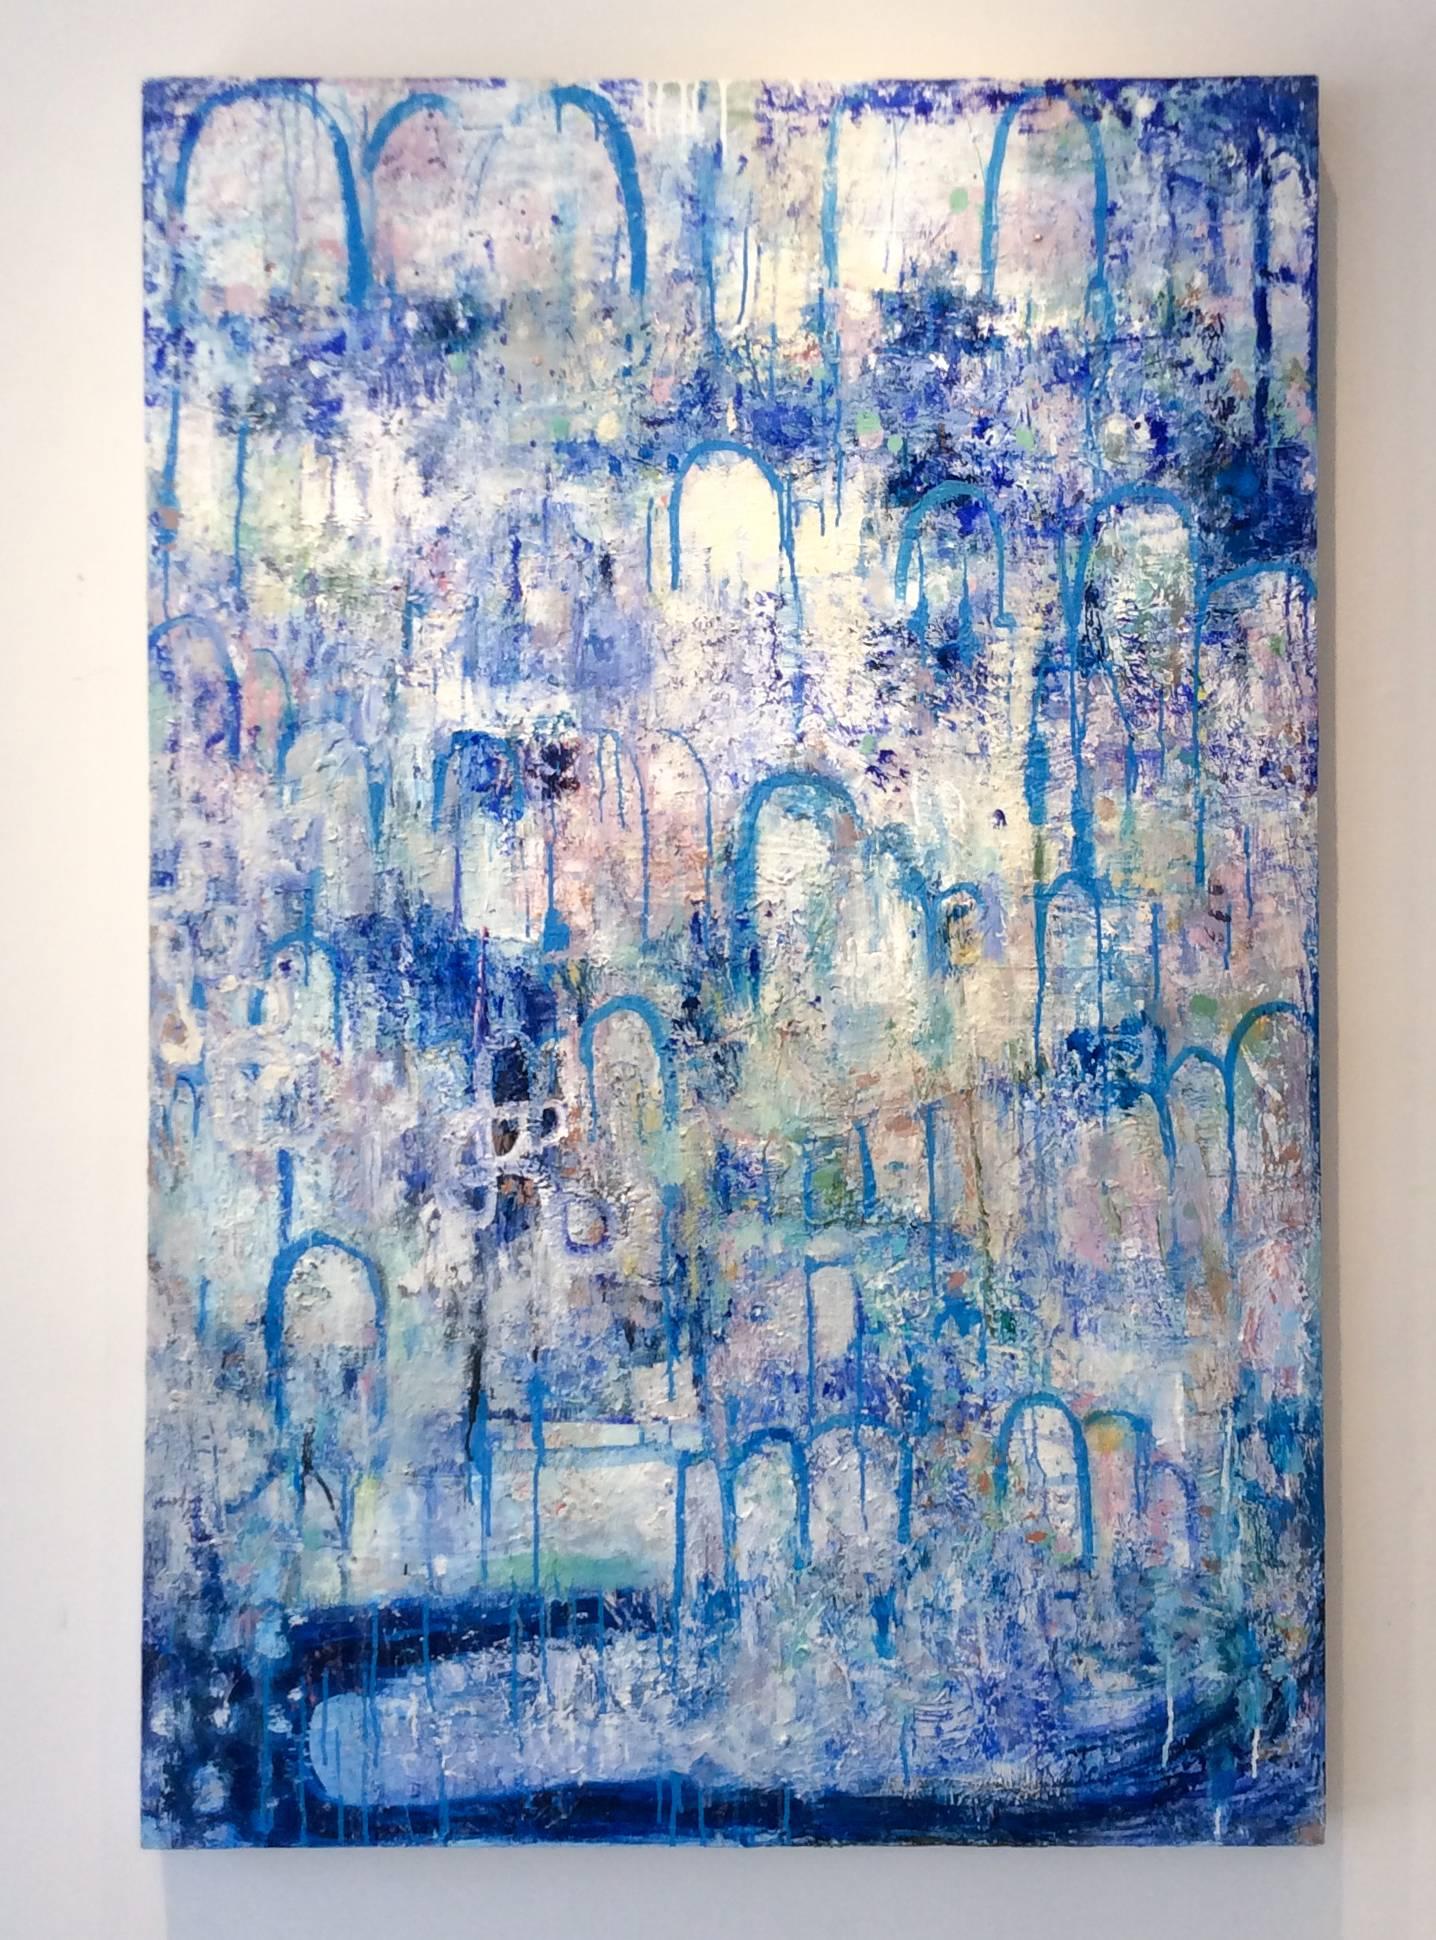 Hydrology (peinture expressionniste abstraite verticale contemporaine, bleue et blanche) - Painting de Ragellah Rourke